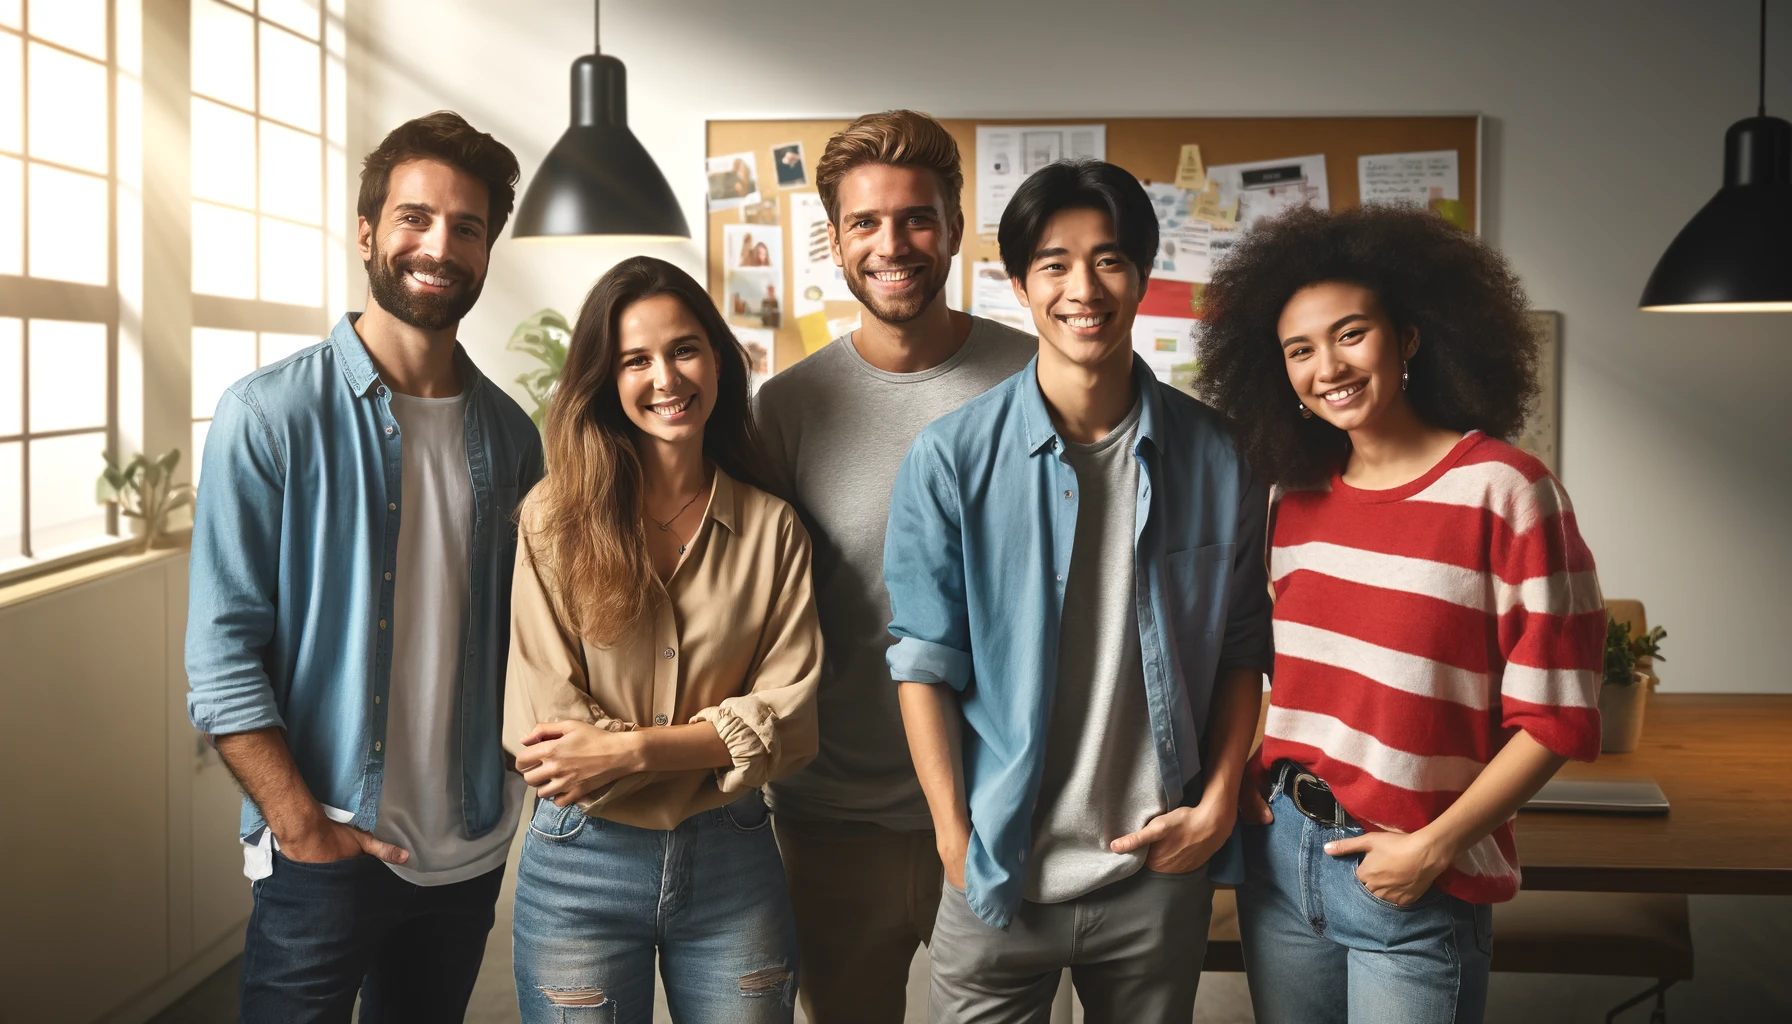 Das Bild zeigt sechs Personen unterschiedlicher Herkunft und Altersgruppen, die in einer modernen Büroumgebung zusammenstehen und lächeln.